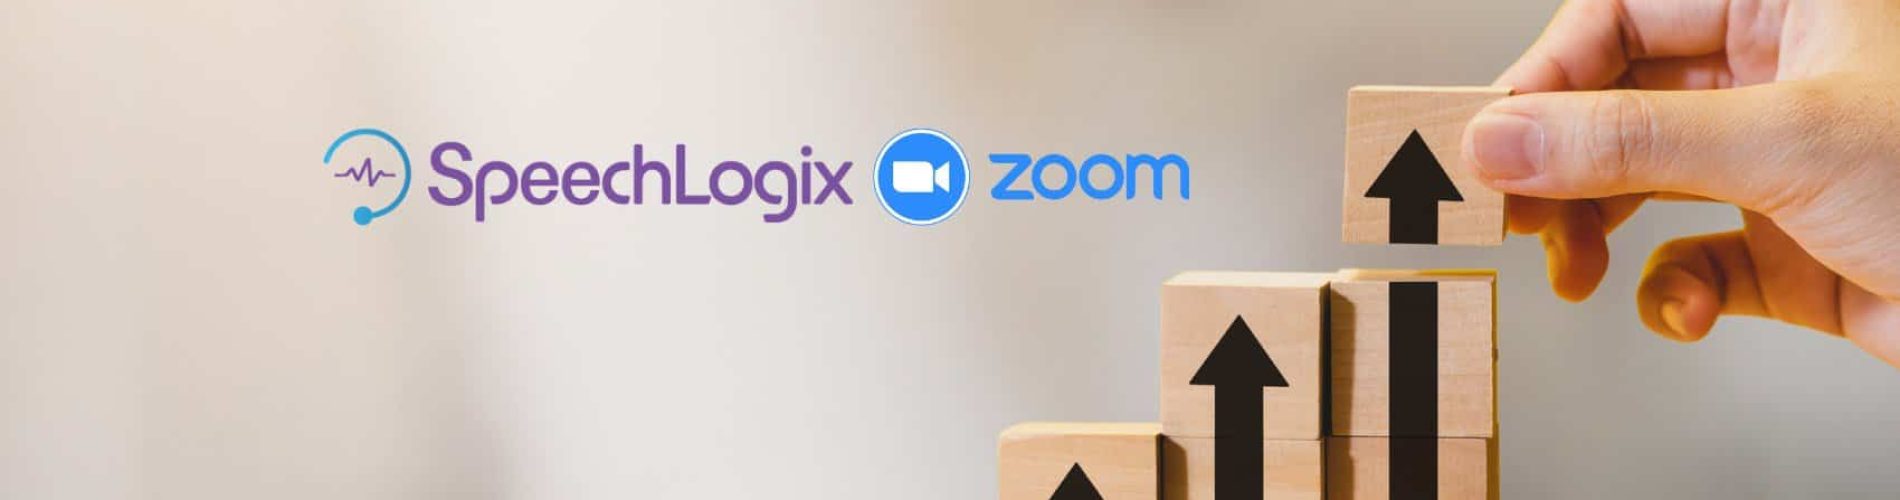 Speechlogix-Zoom